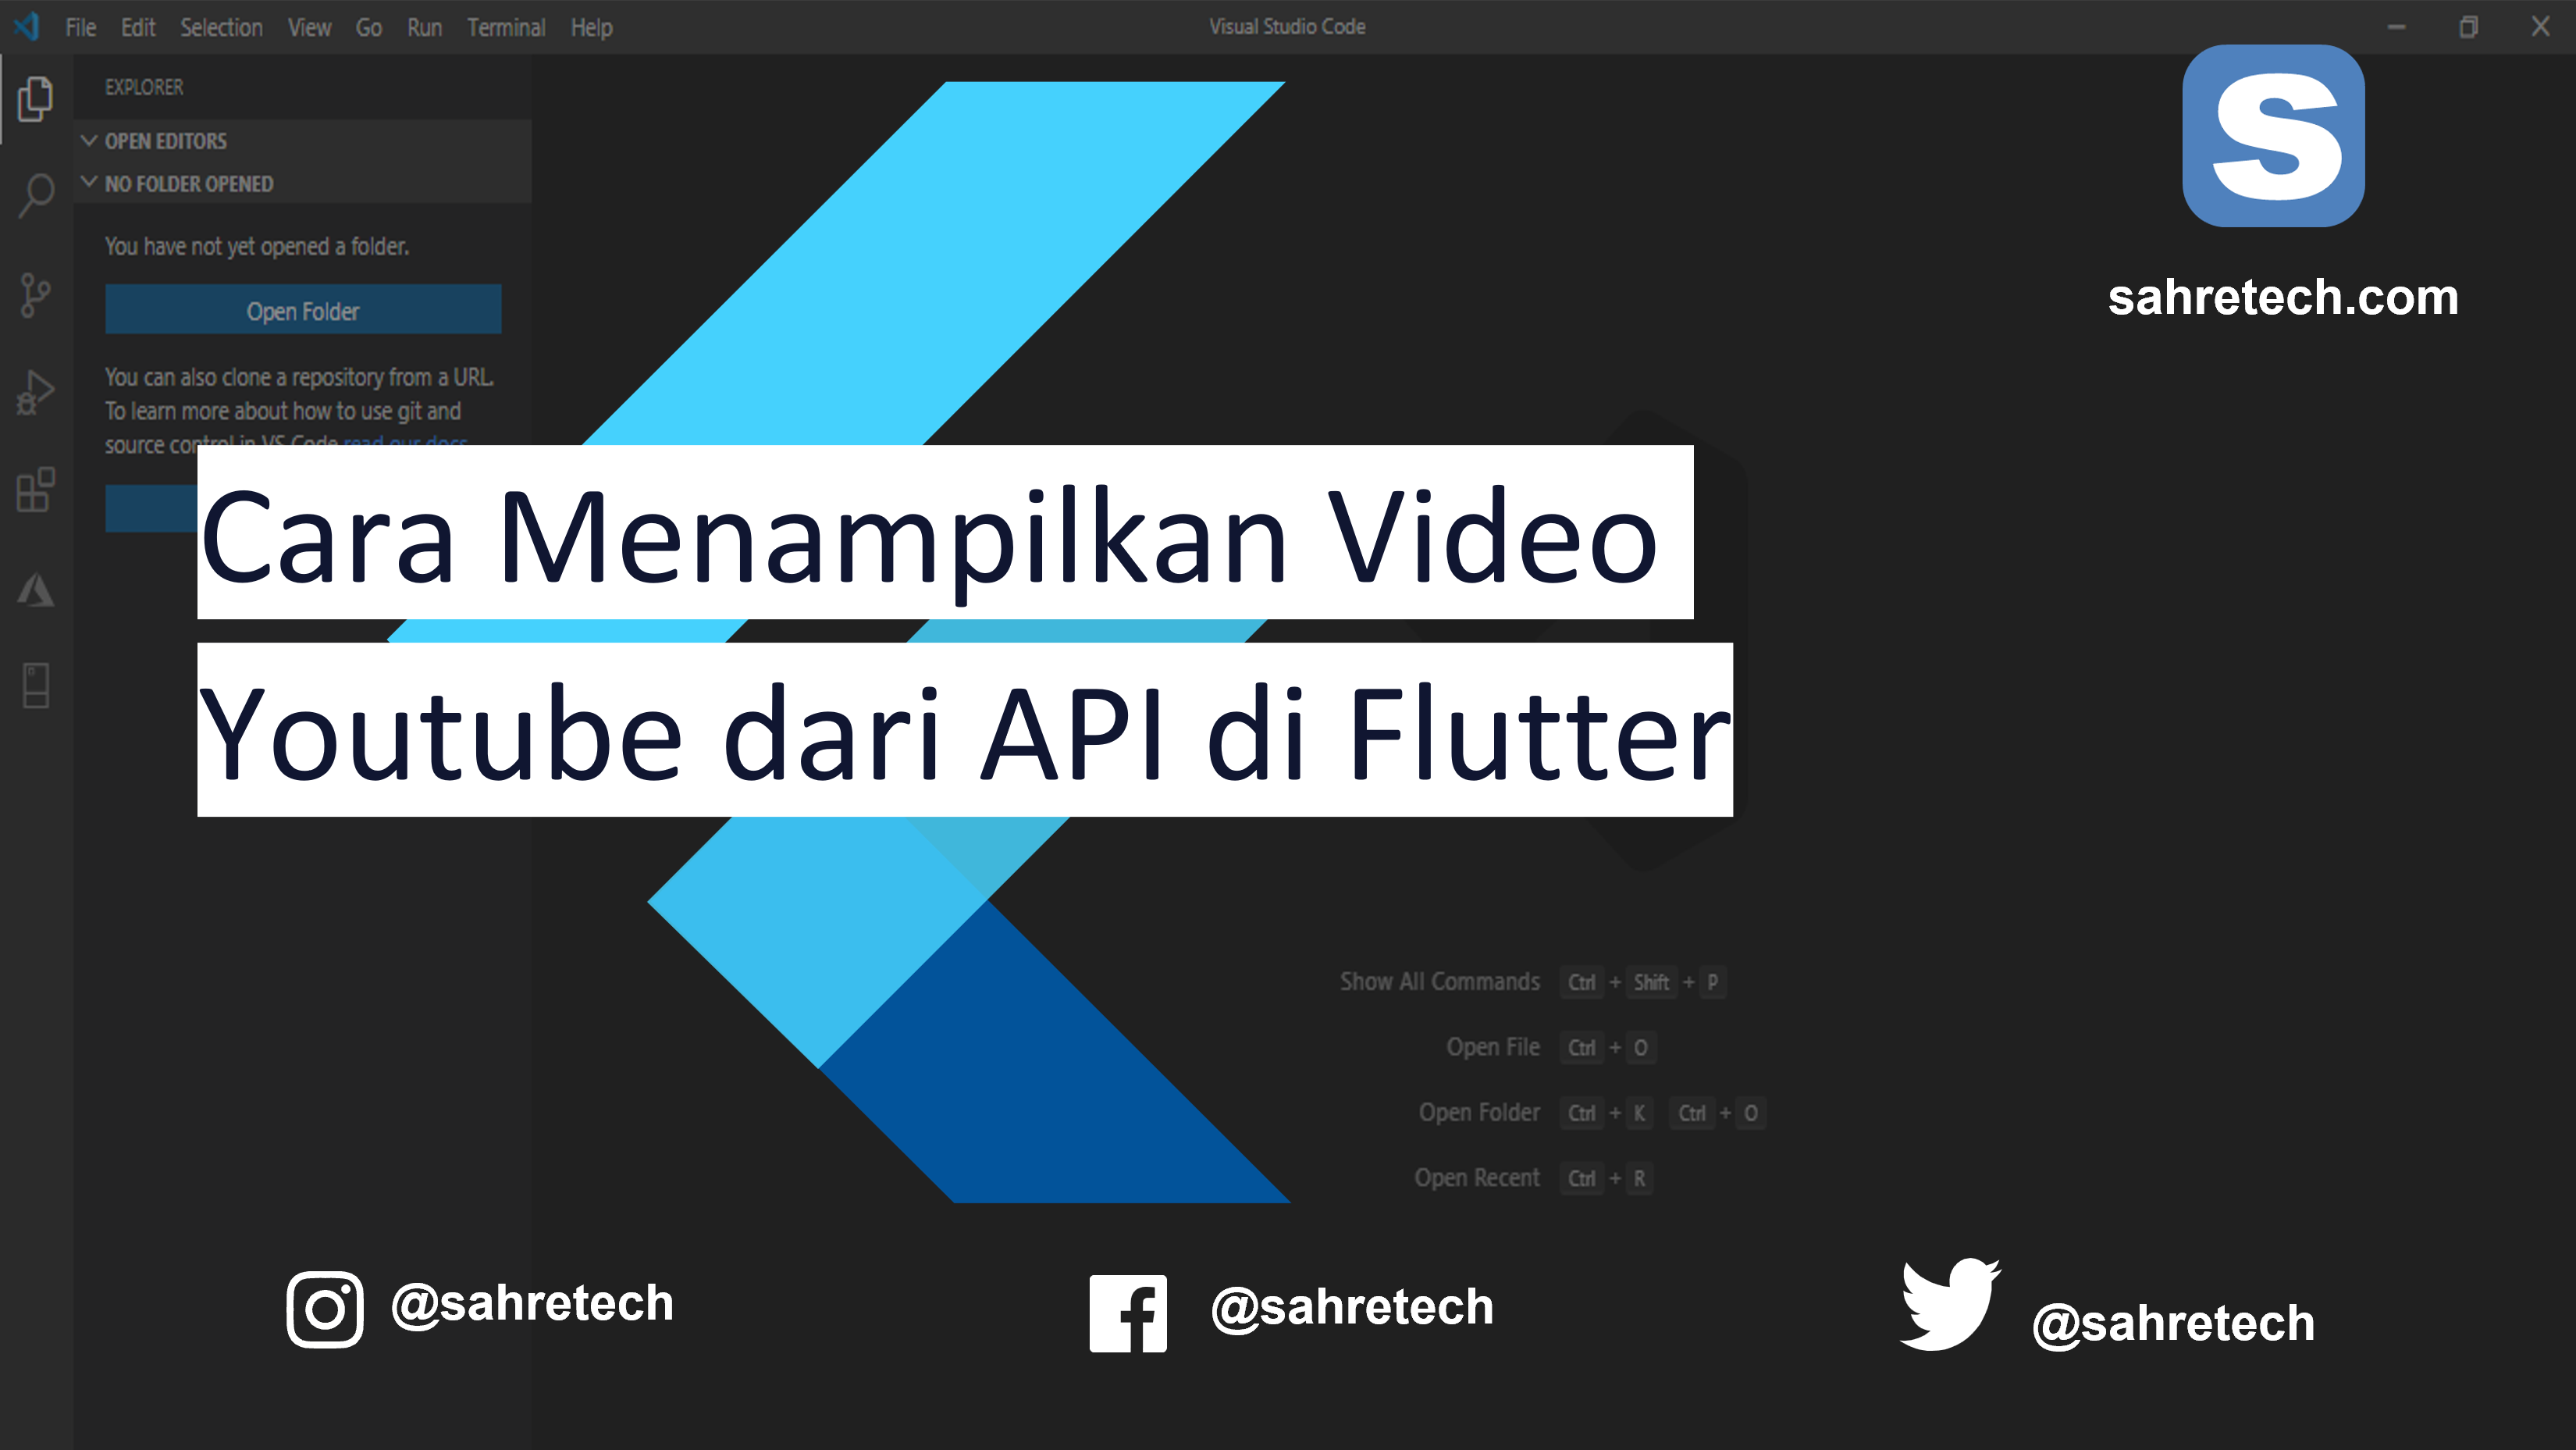 Cara Menampilkan Video Youtube dari API di Flutter